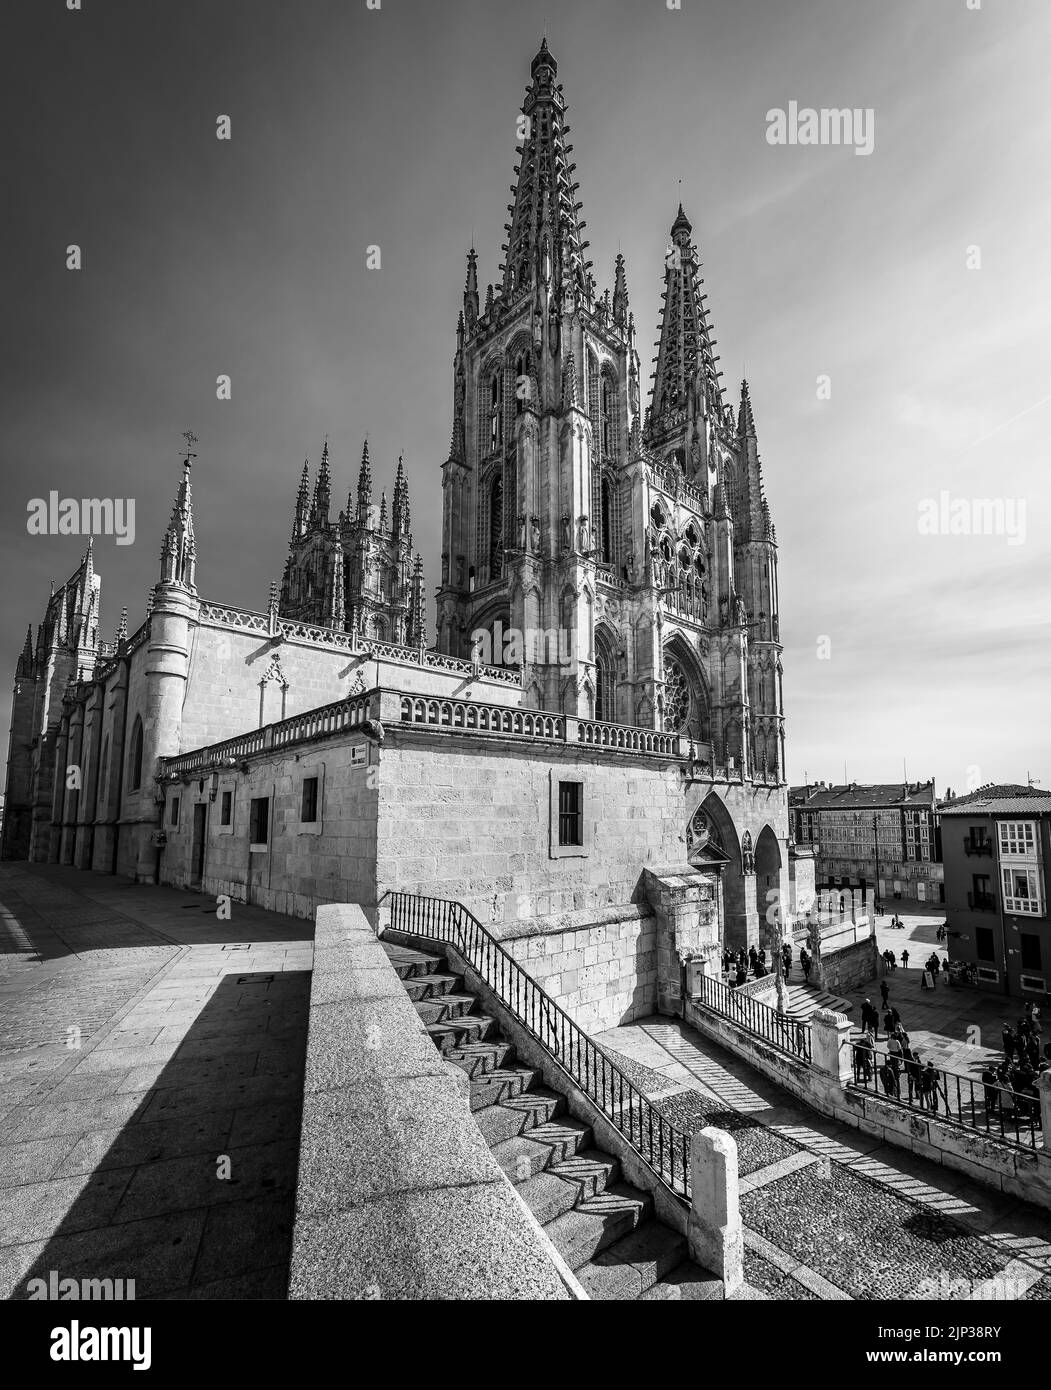 Cathédrale gothique de Burgos par jour et avec ciel bleu clair. Photo grand angle. Monochrome, noir et blanc. Banque D'Images